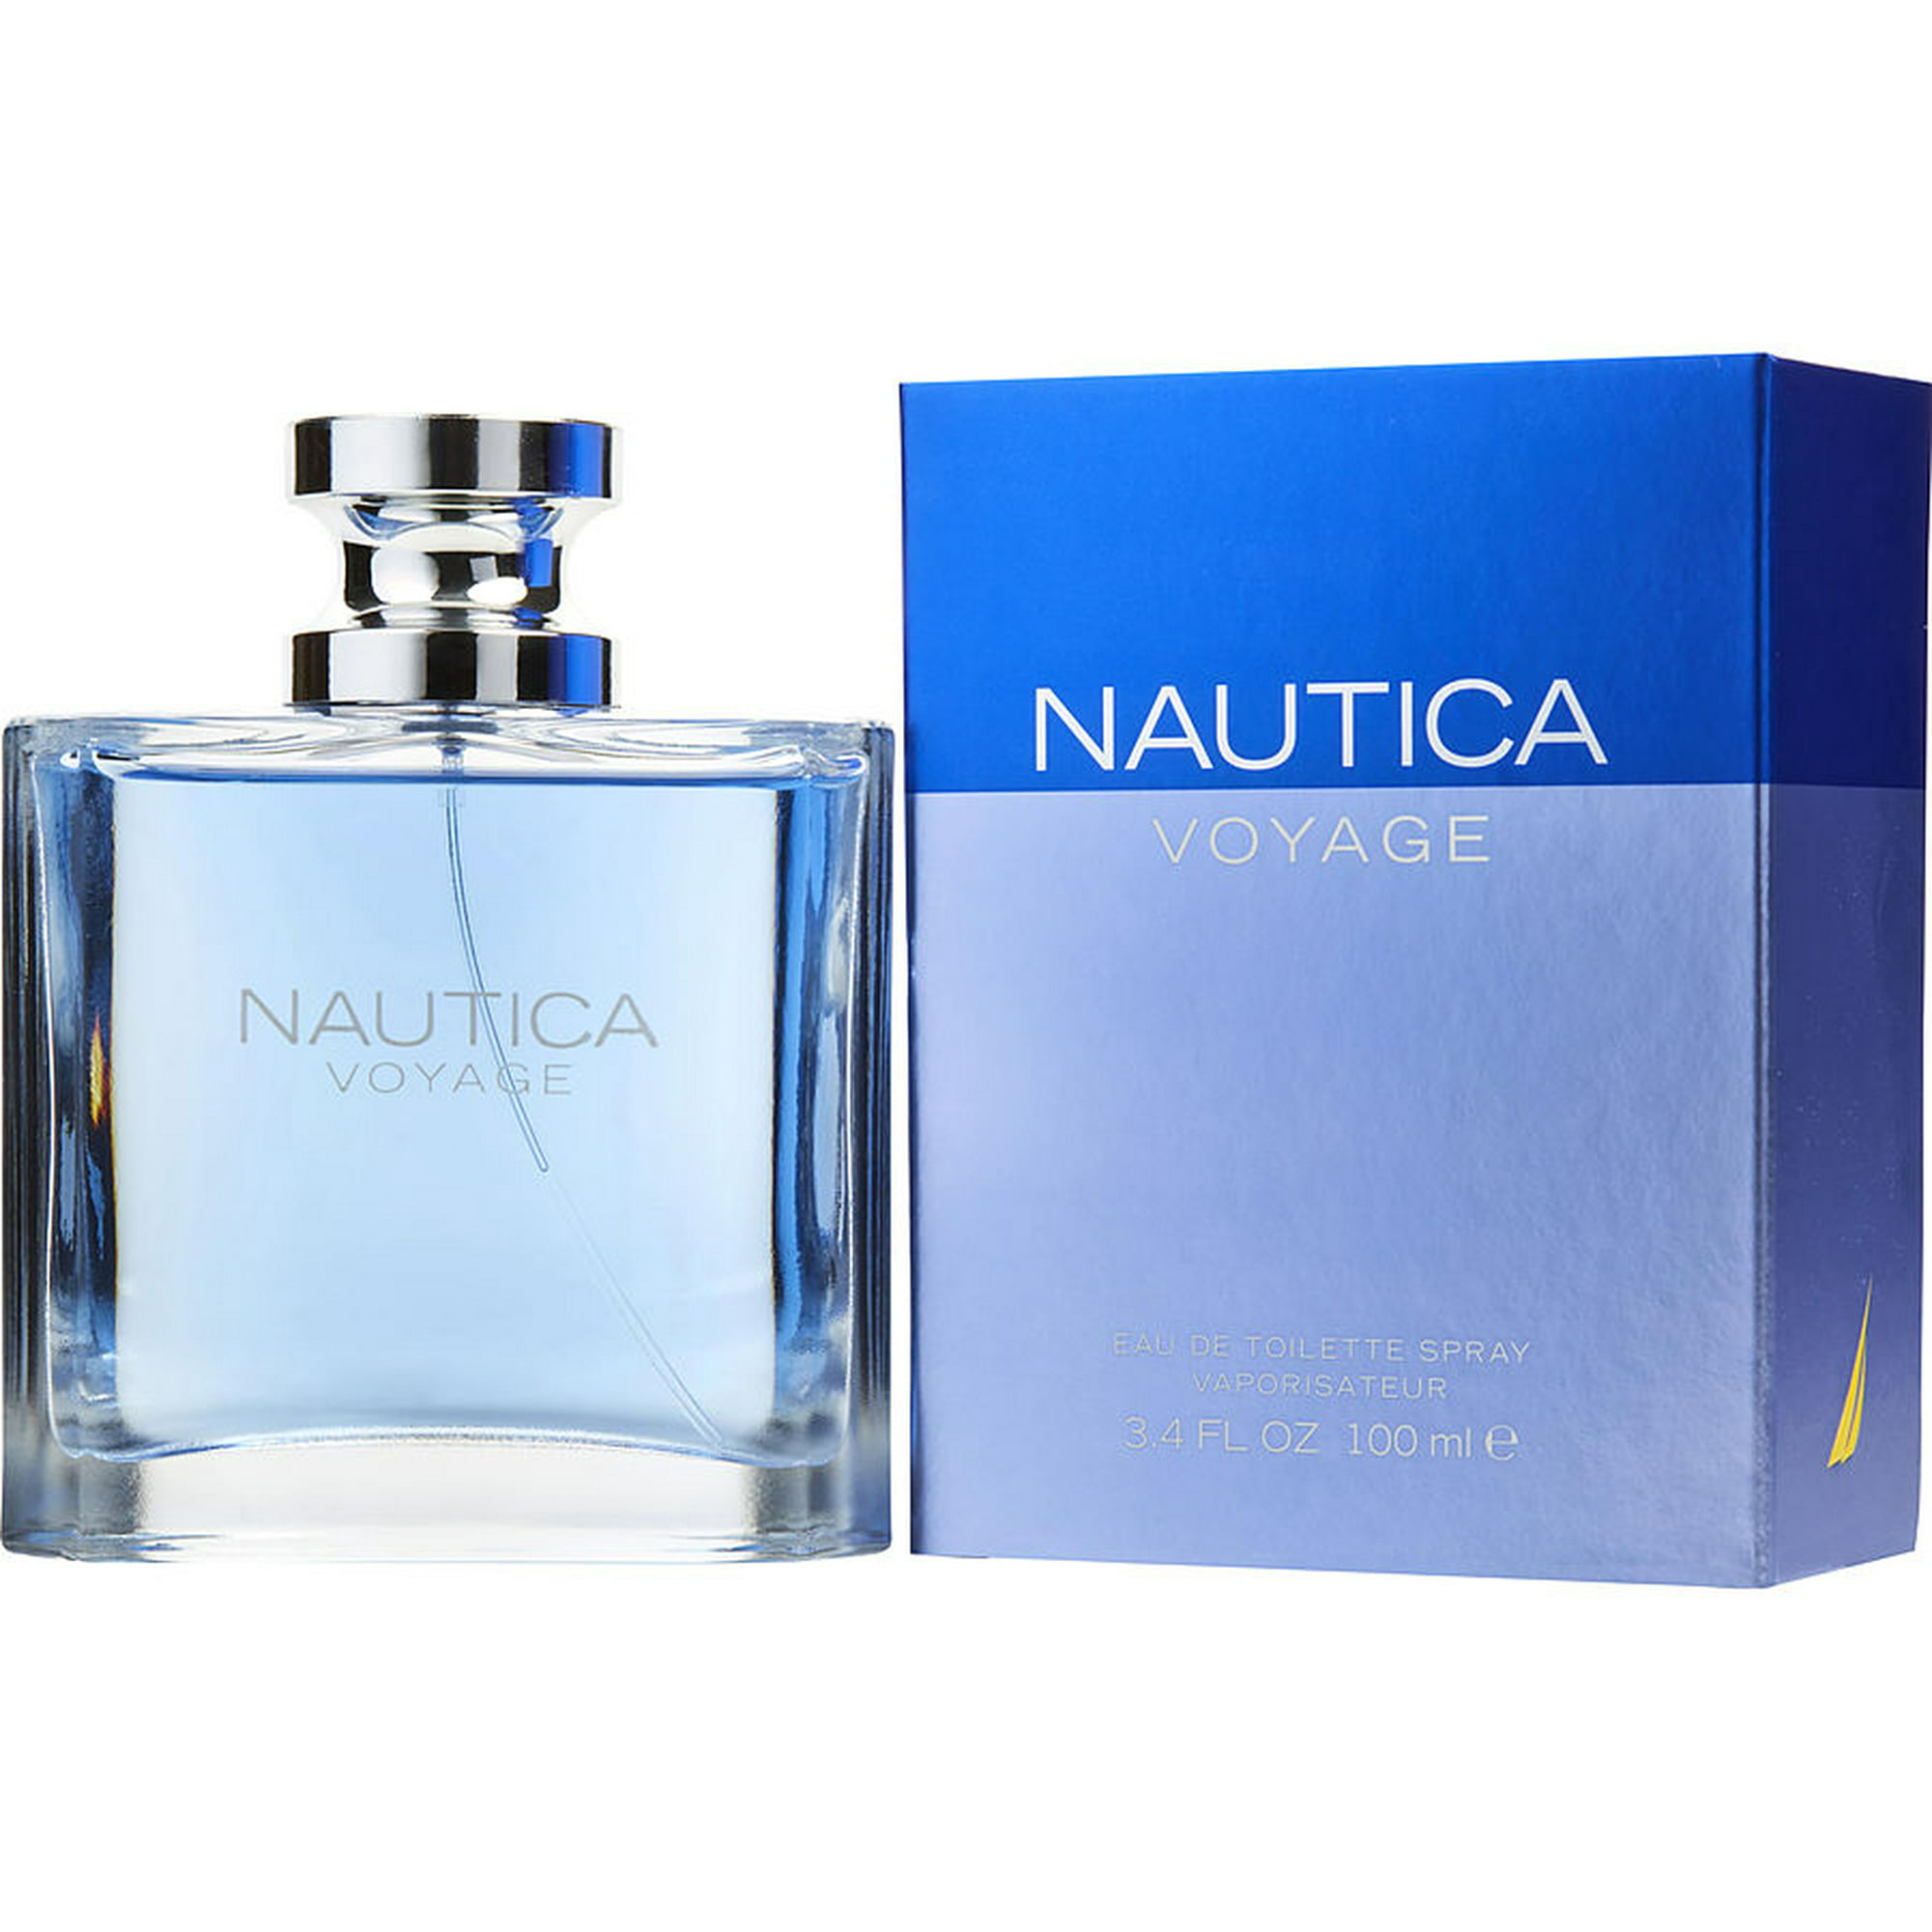 perfumes like nautica voyage